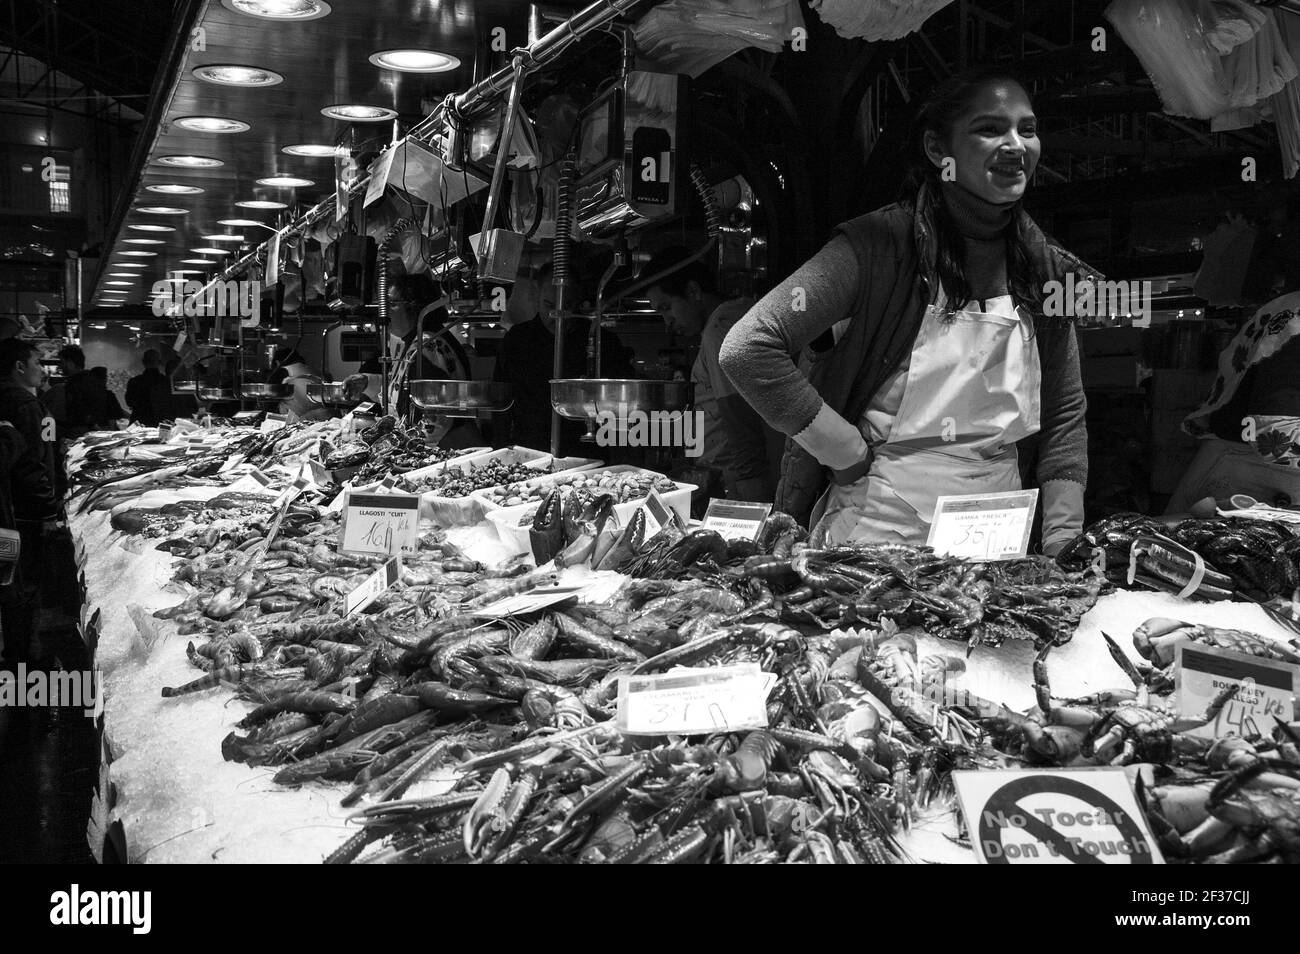 BARCELONA, ESPAÑA - 10 DE MARZO de 2018: Famoso mercado de comida de Barcelona la Boqueria. Mariscos y pescados puestos. Joven vendedor sirviendo a los clientes con una sonrisa. Foto de stock